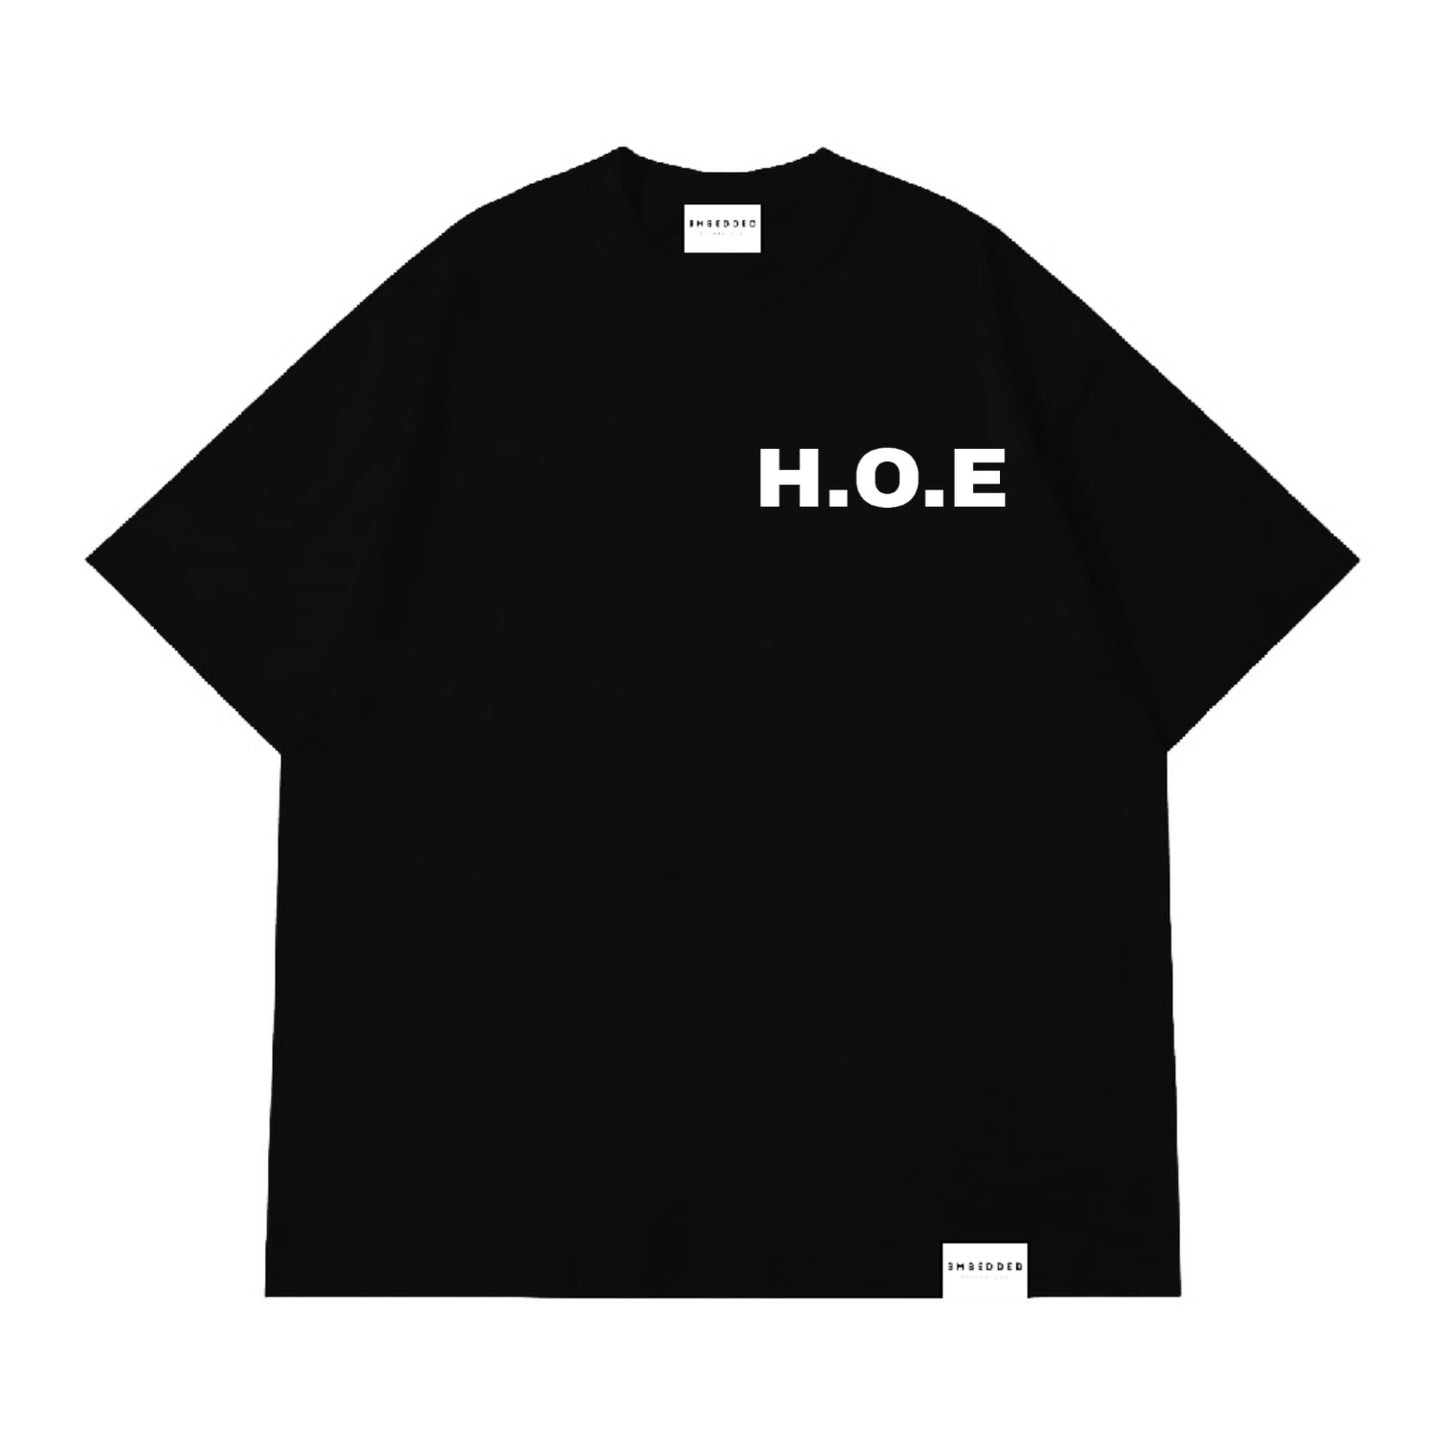 H.O.E - Black